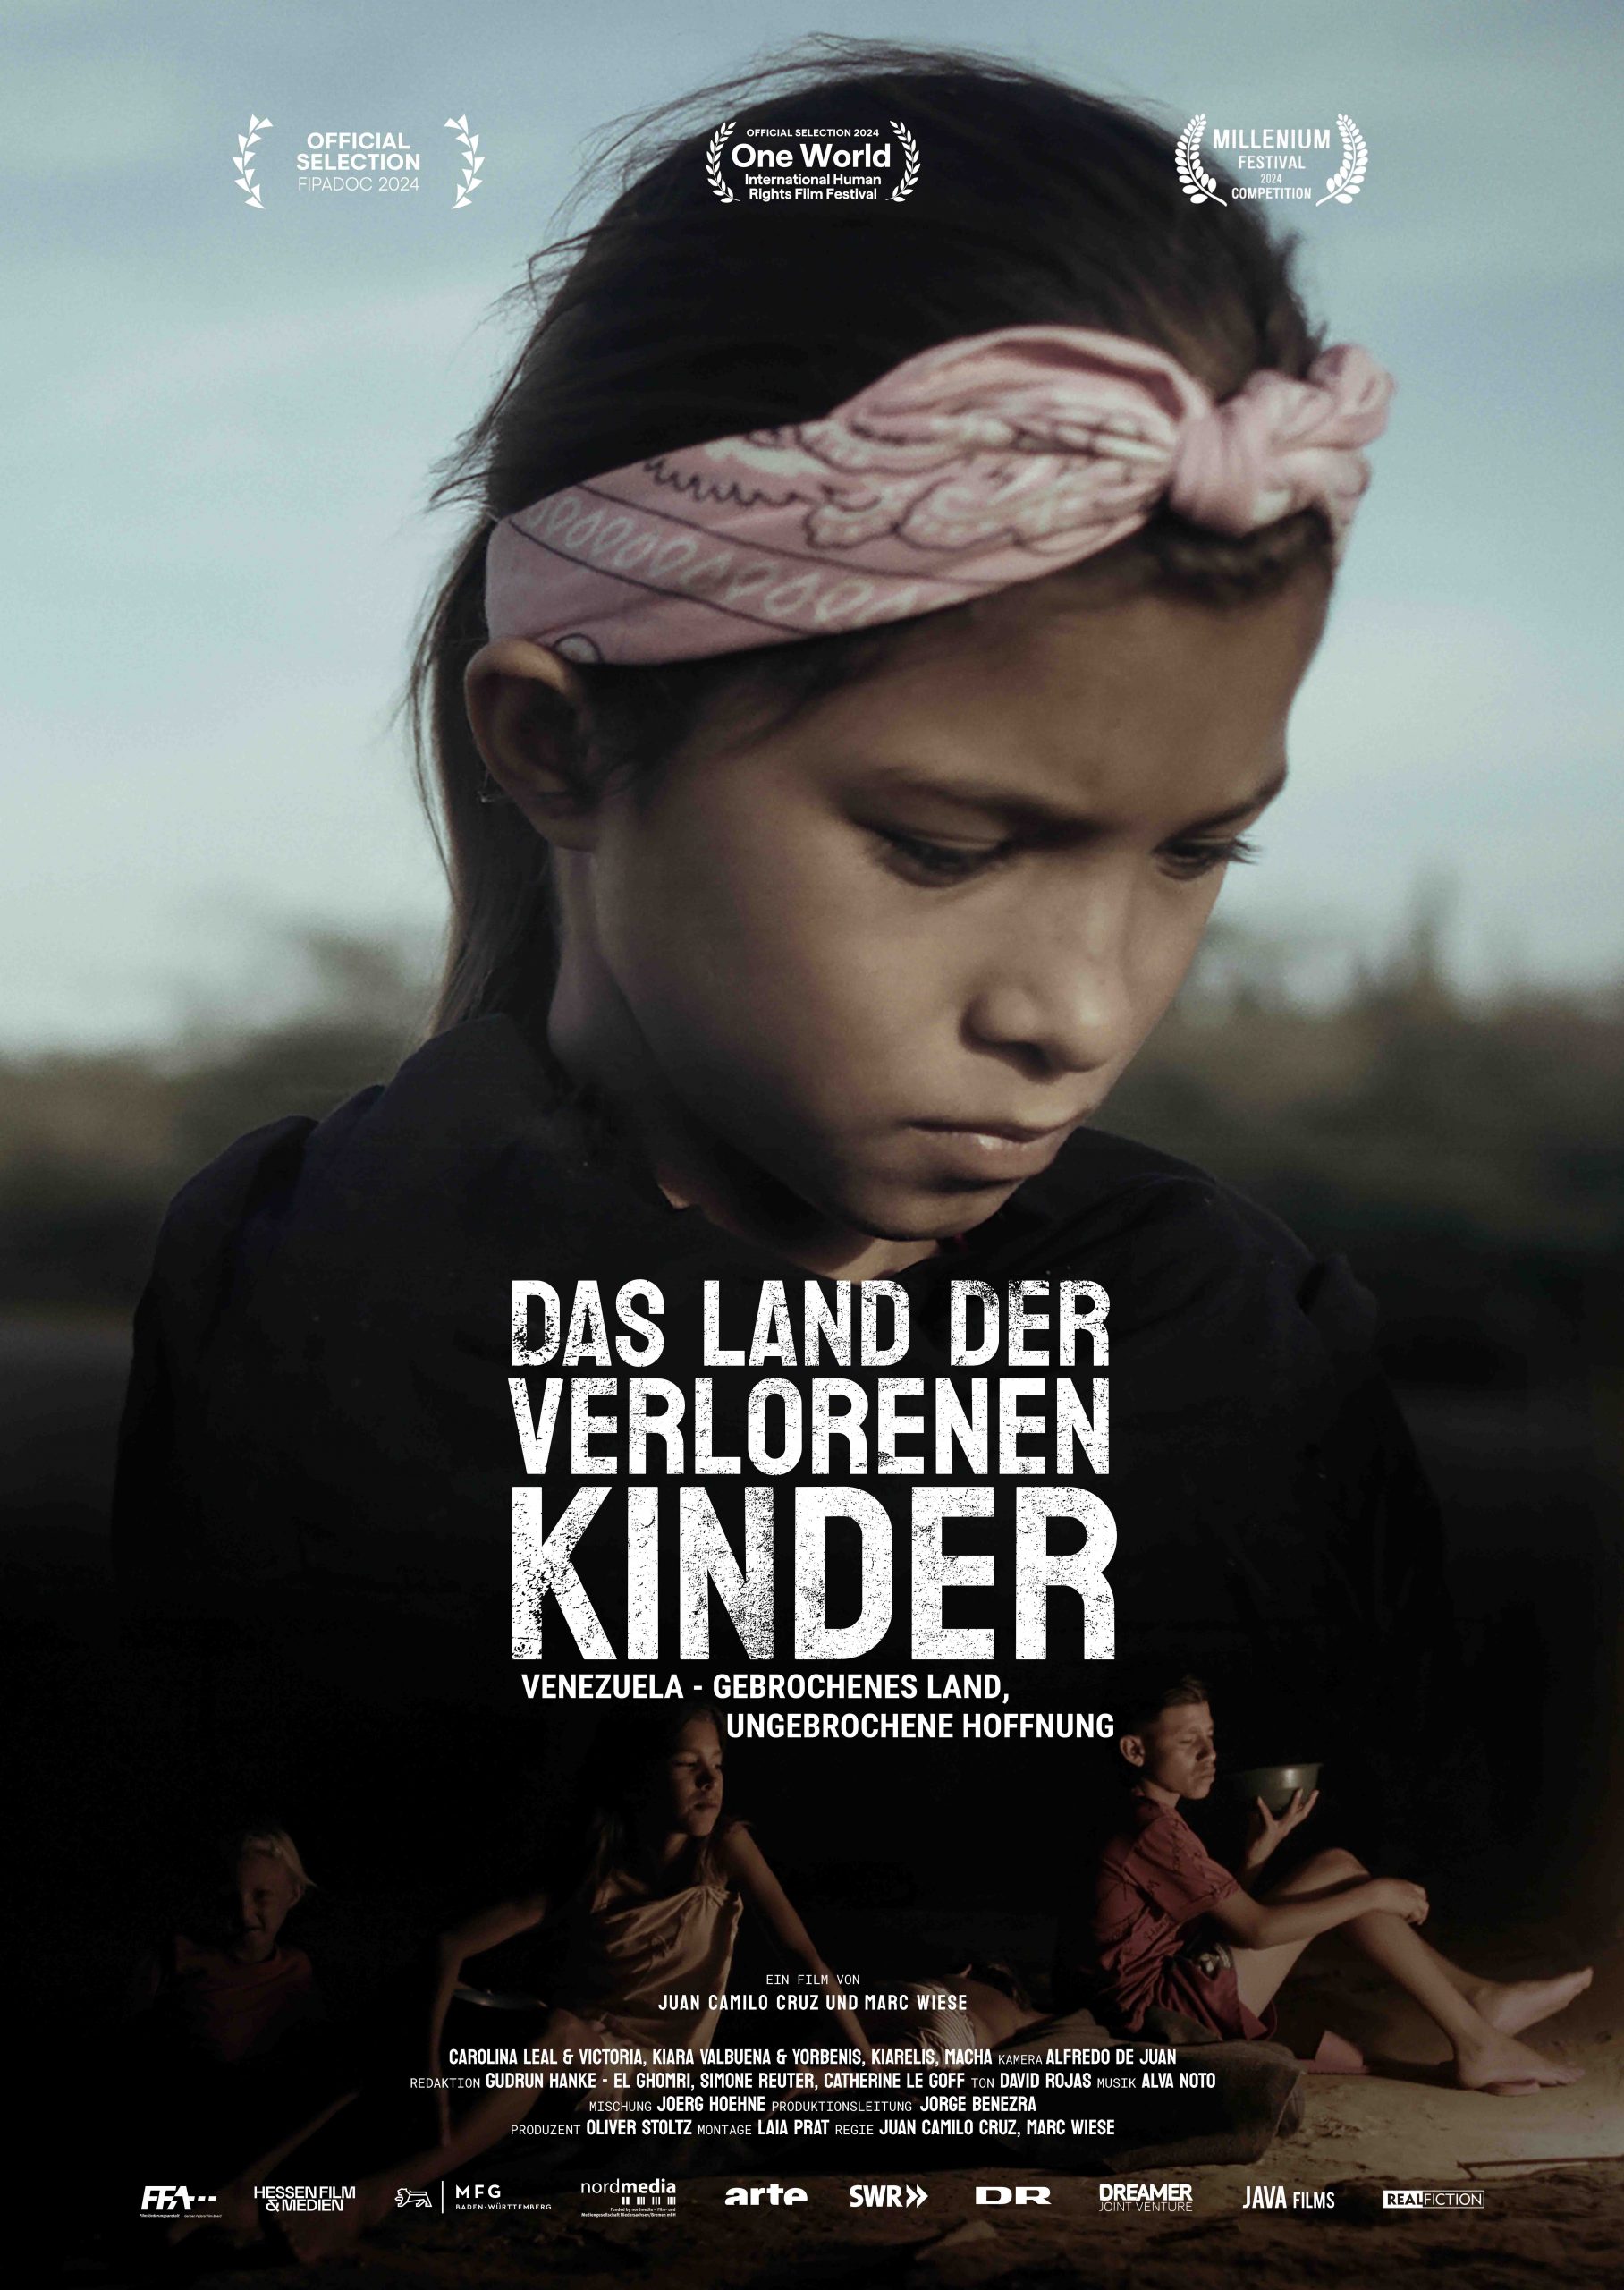 Filmvorführung und Gespräch: "Das Land der Verlorenen Kinder" (Eintritt frei!)